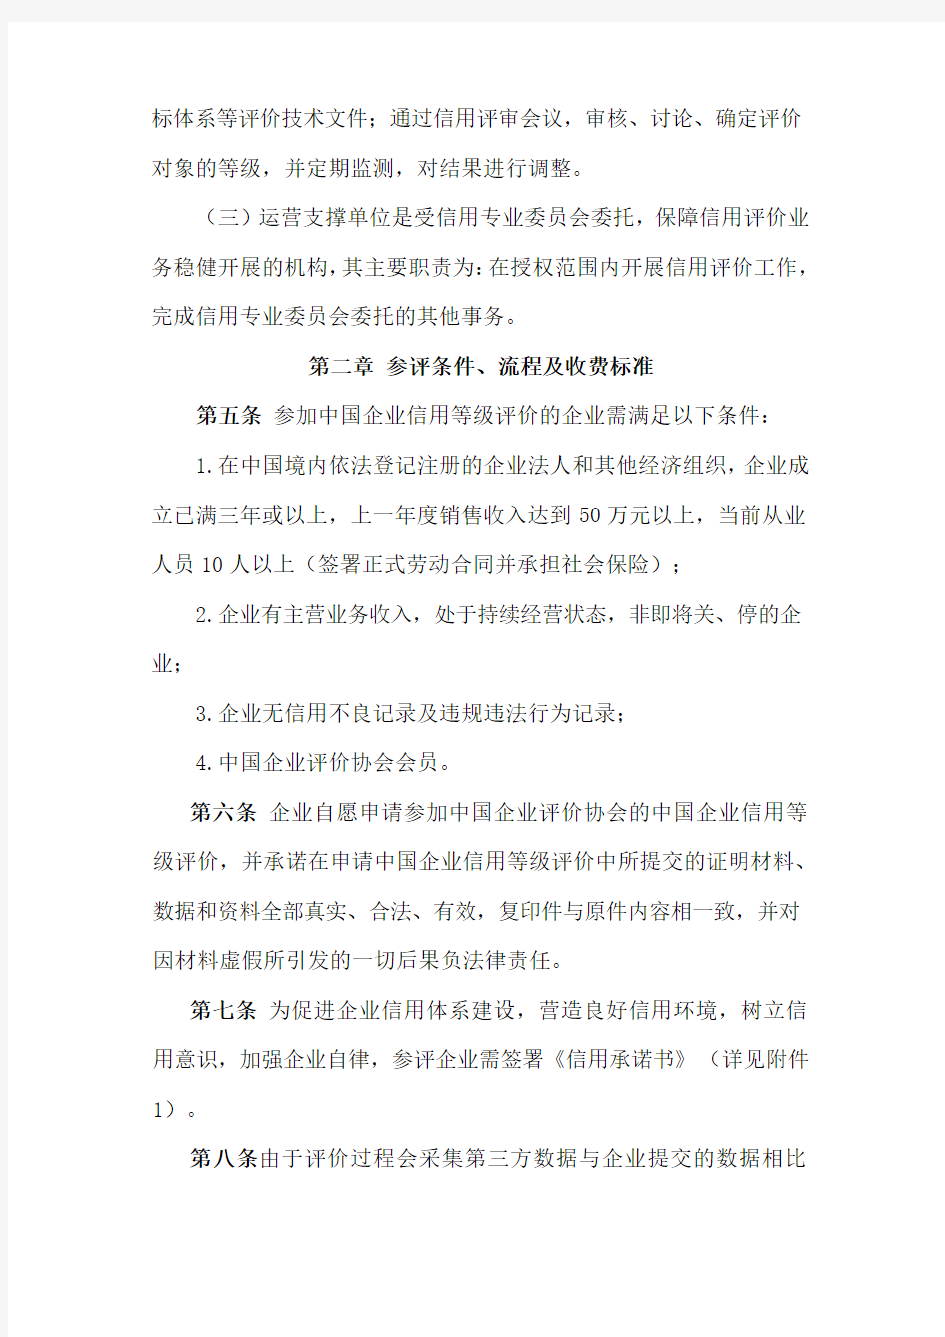 中国企业评价协会中国企业信用等级评价管理办法